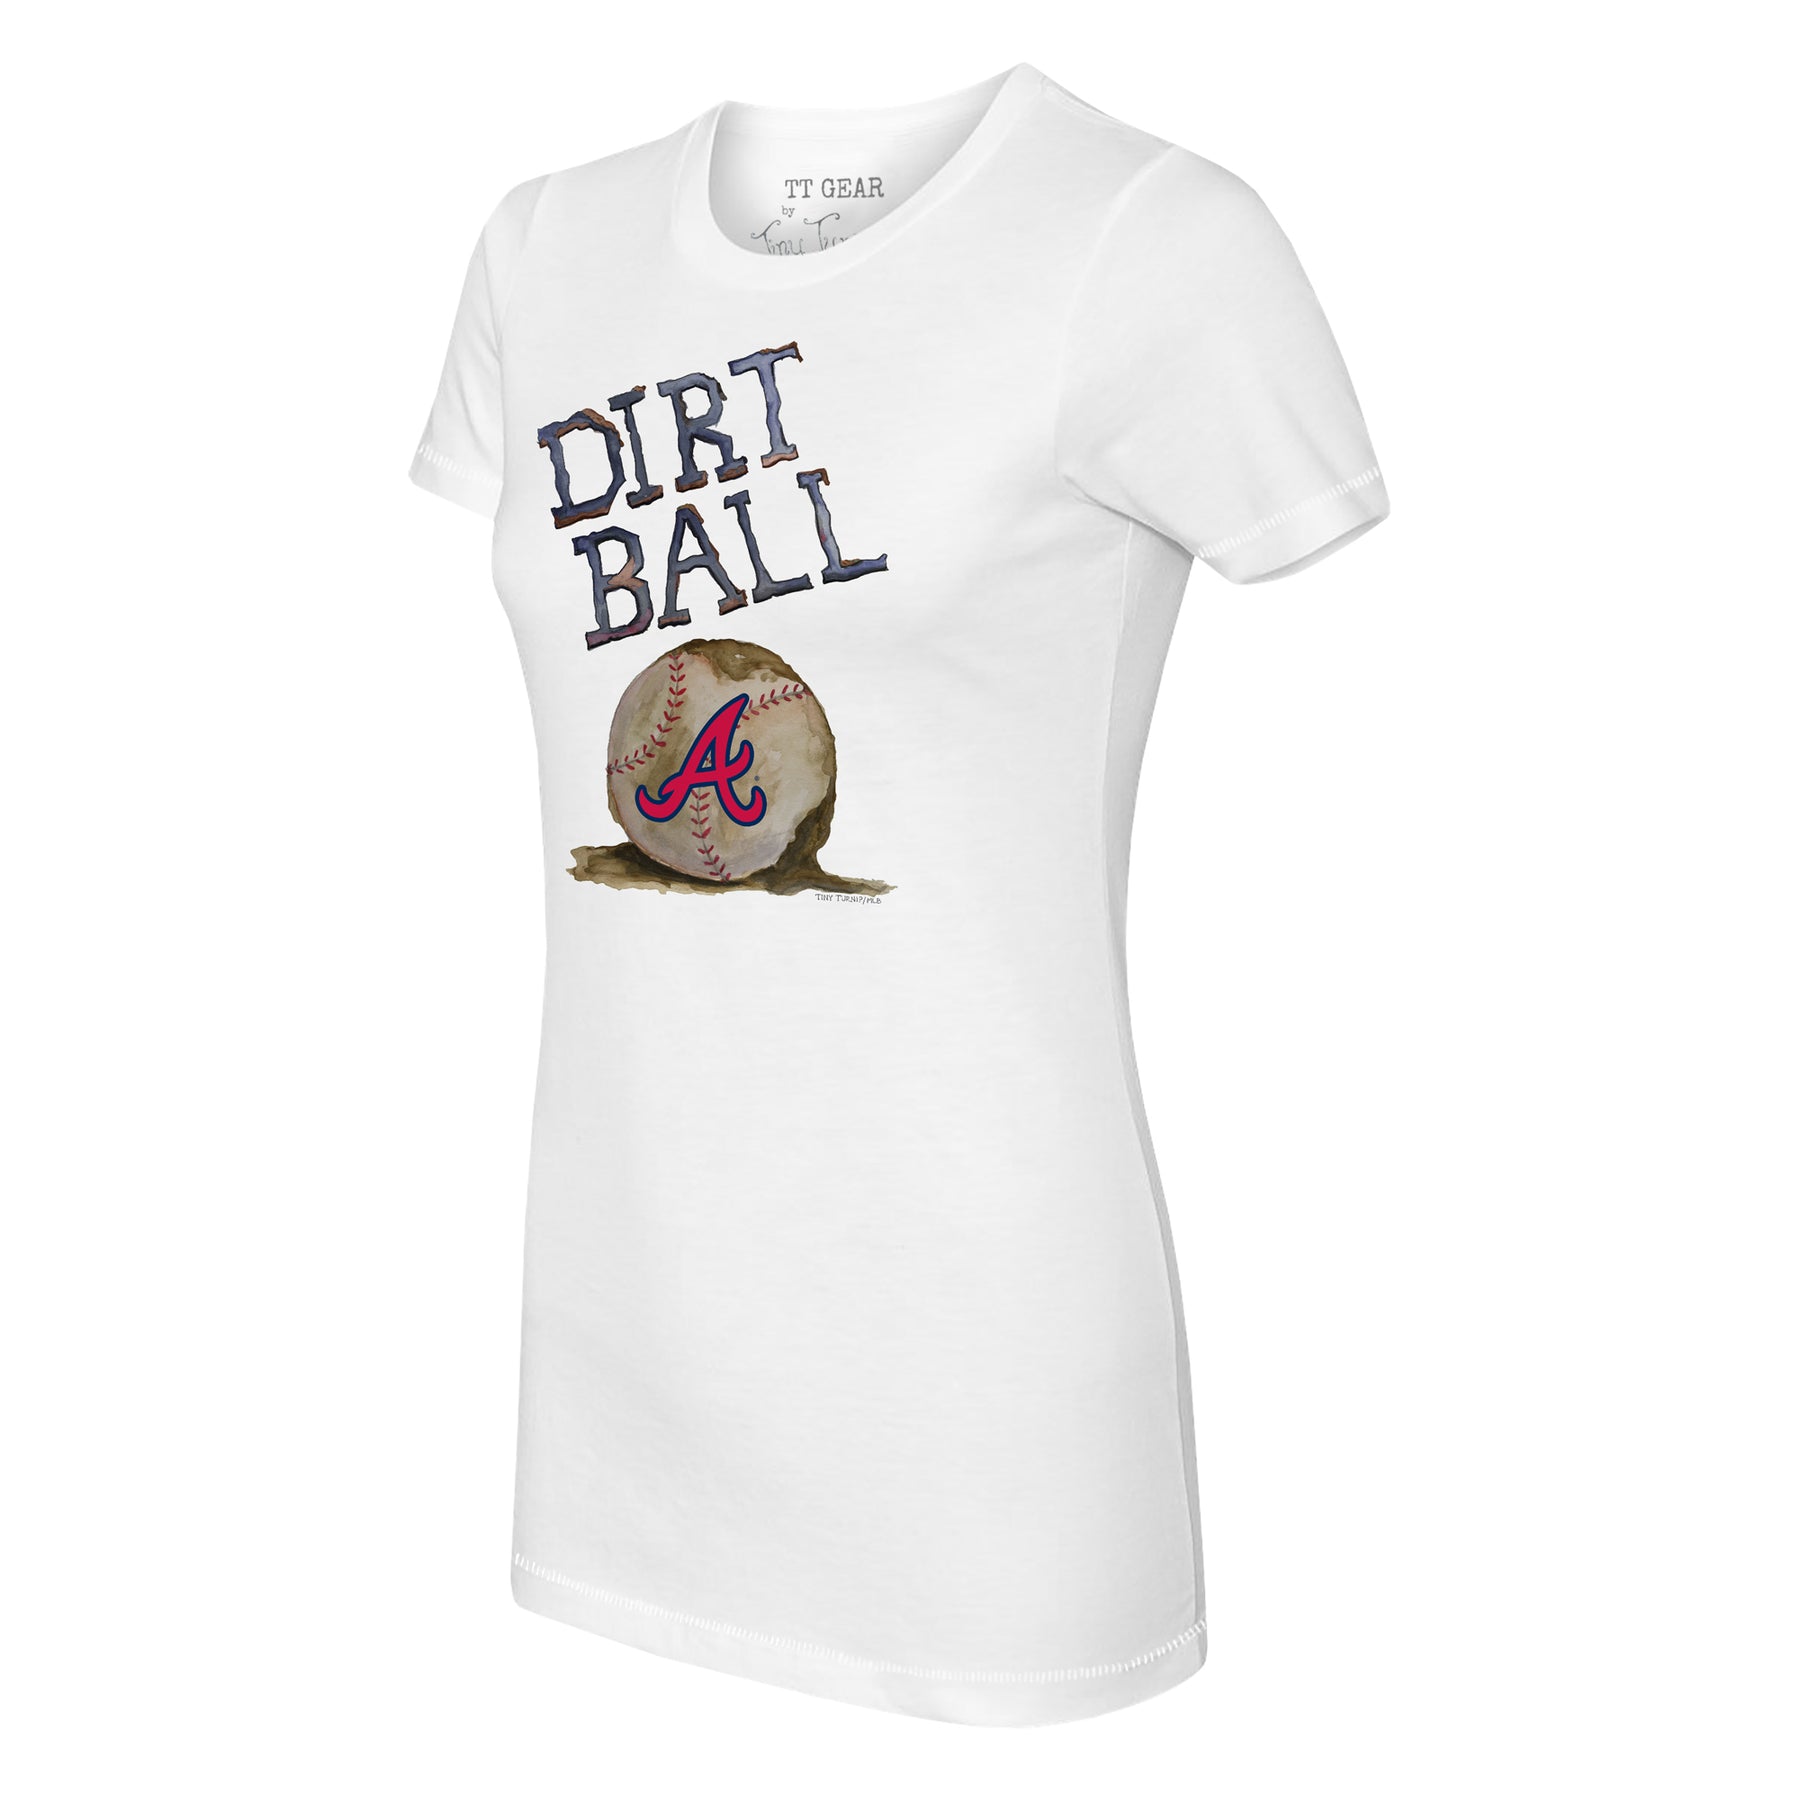 Tiny Turnip Atlanta Braves Sugar Skull Tee Shirt Women's XS / White